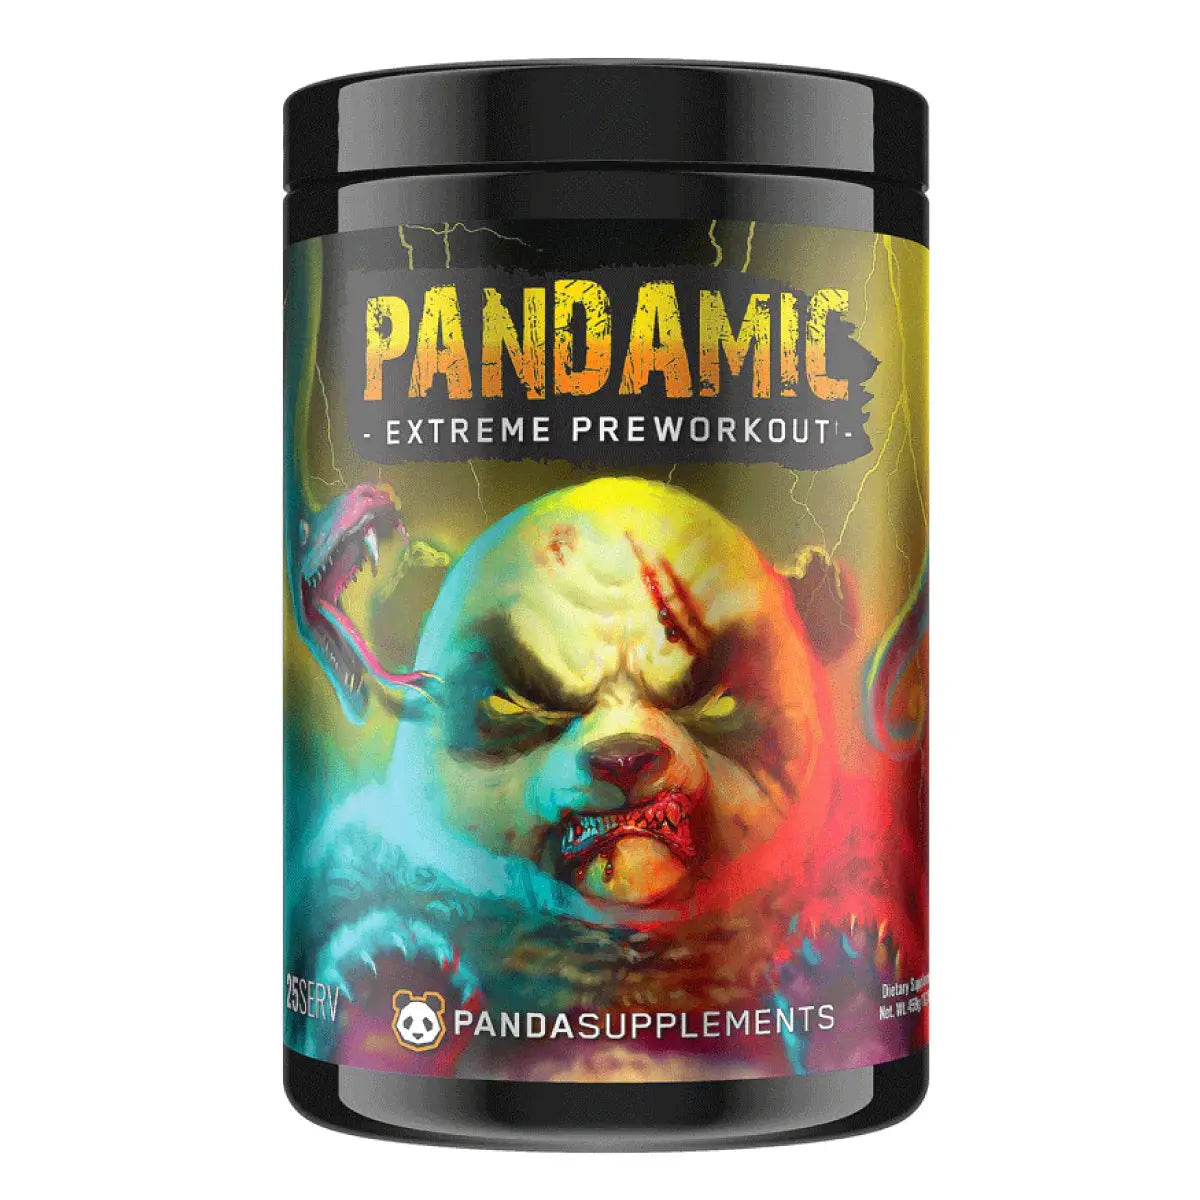 PANDAMIC PRE-WORKOUT Panda Supps